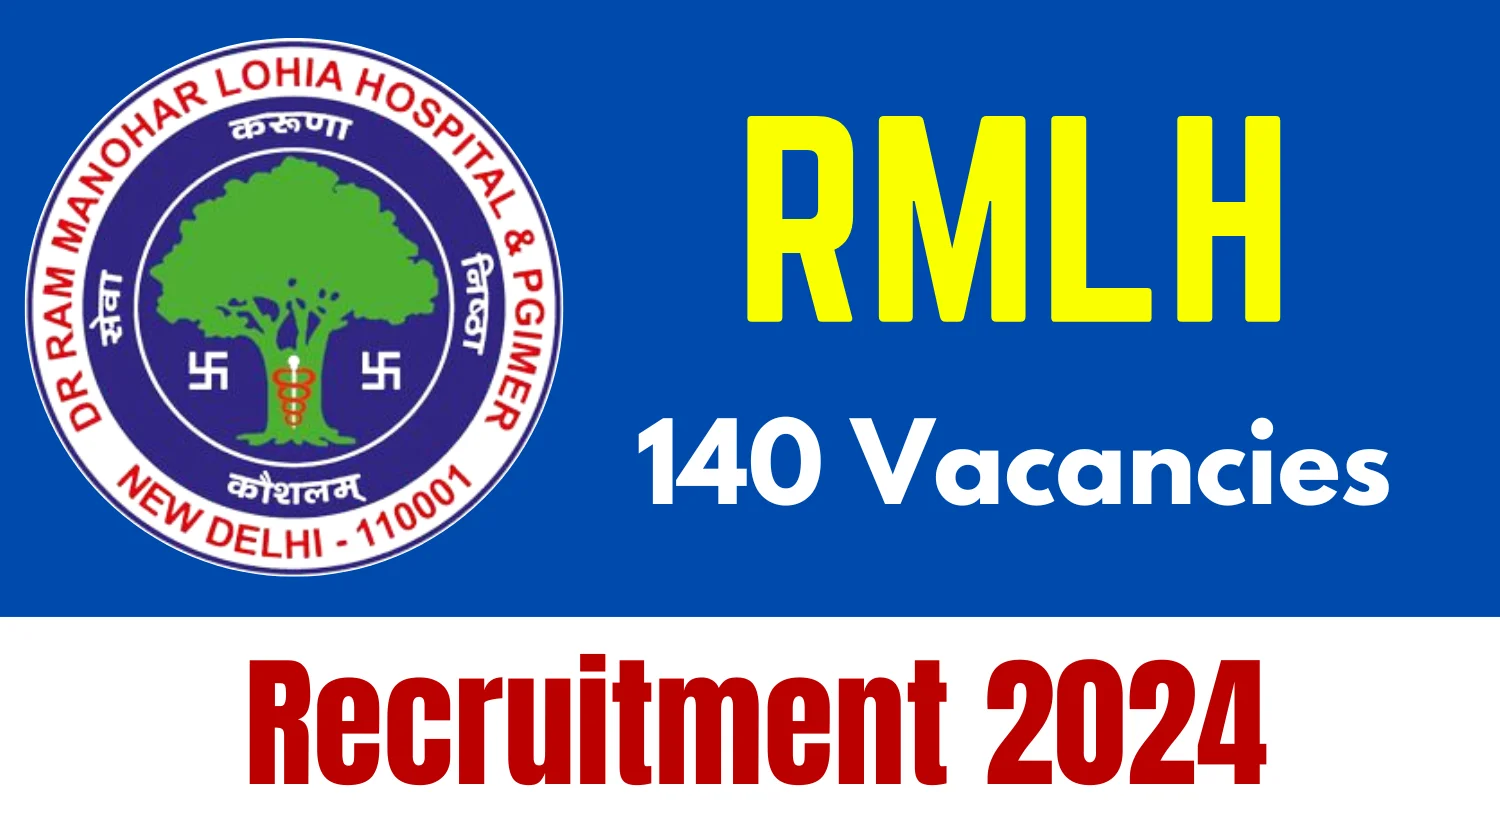 RMLH Senior Resident Recruitment 2024